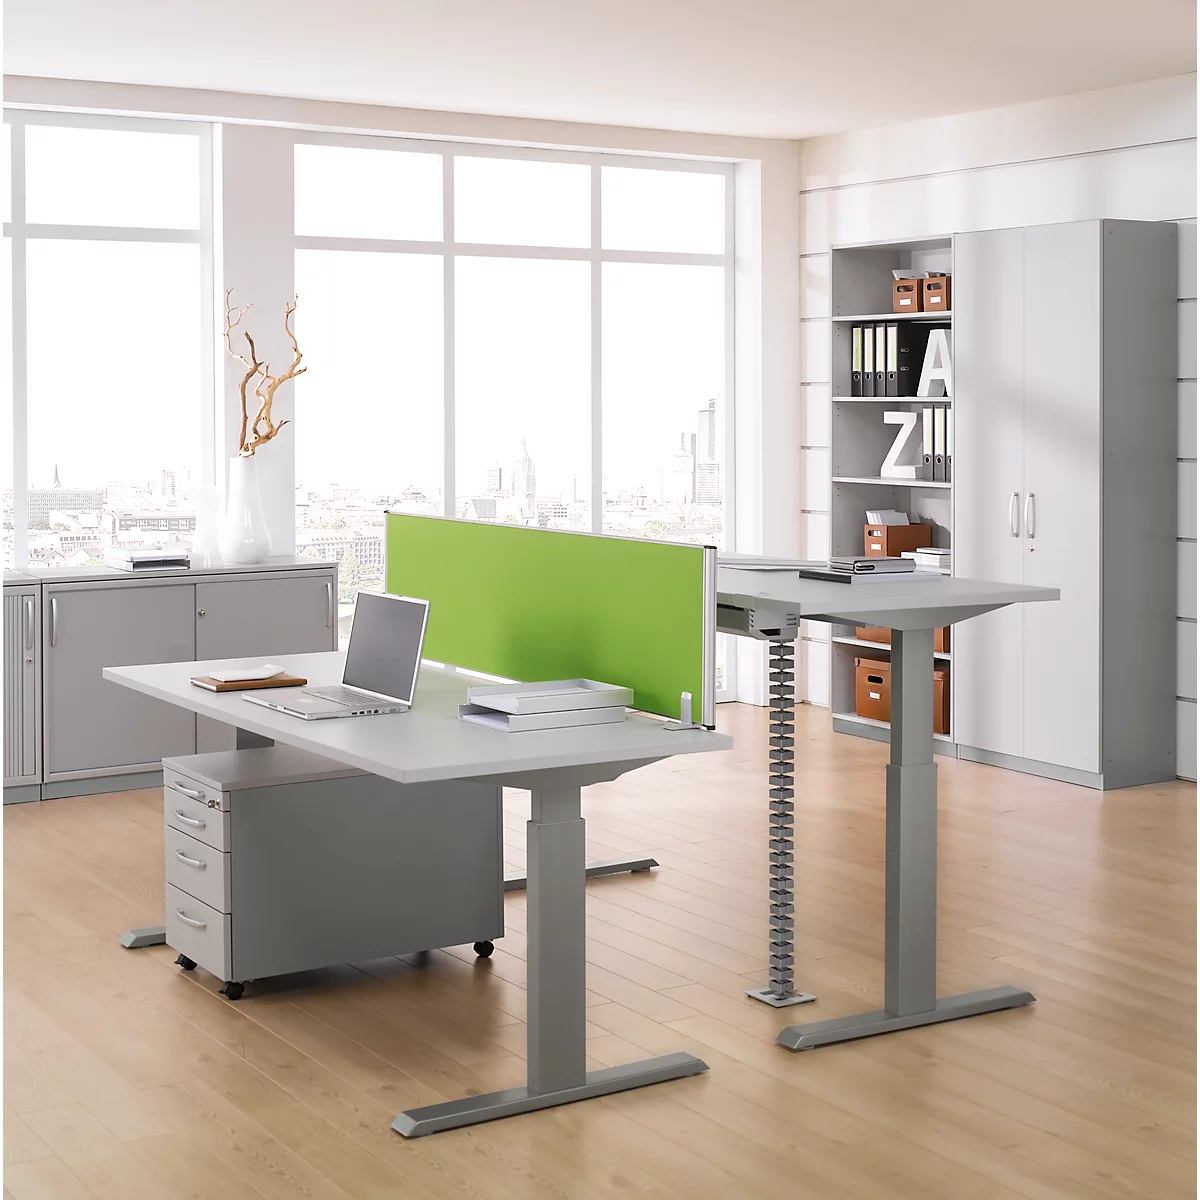 Schäfer Shop Select ERGO-T escritorio, regulable eléctricamente en altura, rectangular, pie en T, An 1200 x Pr 800 x Al 640-1300 mm, aluminio gris claro/blanco